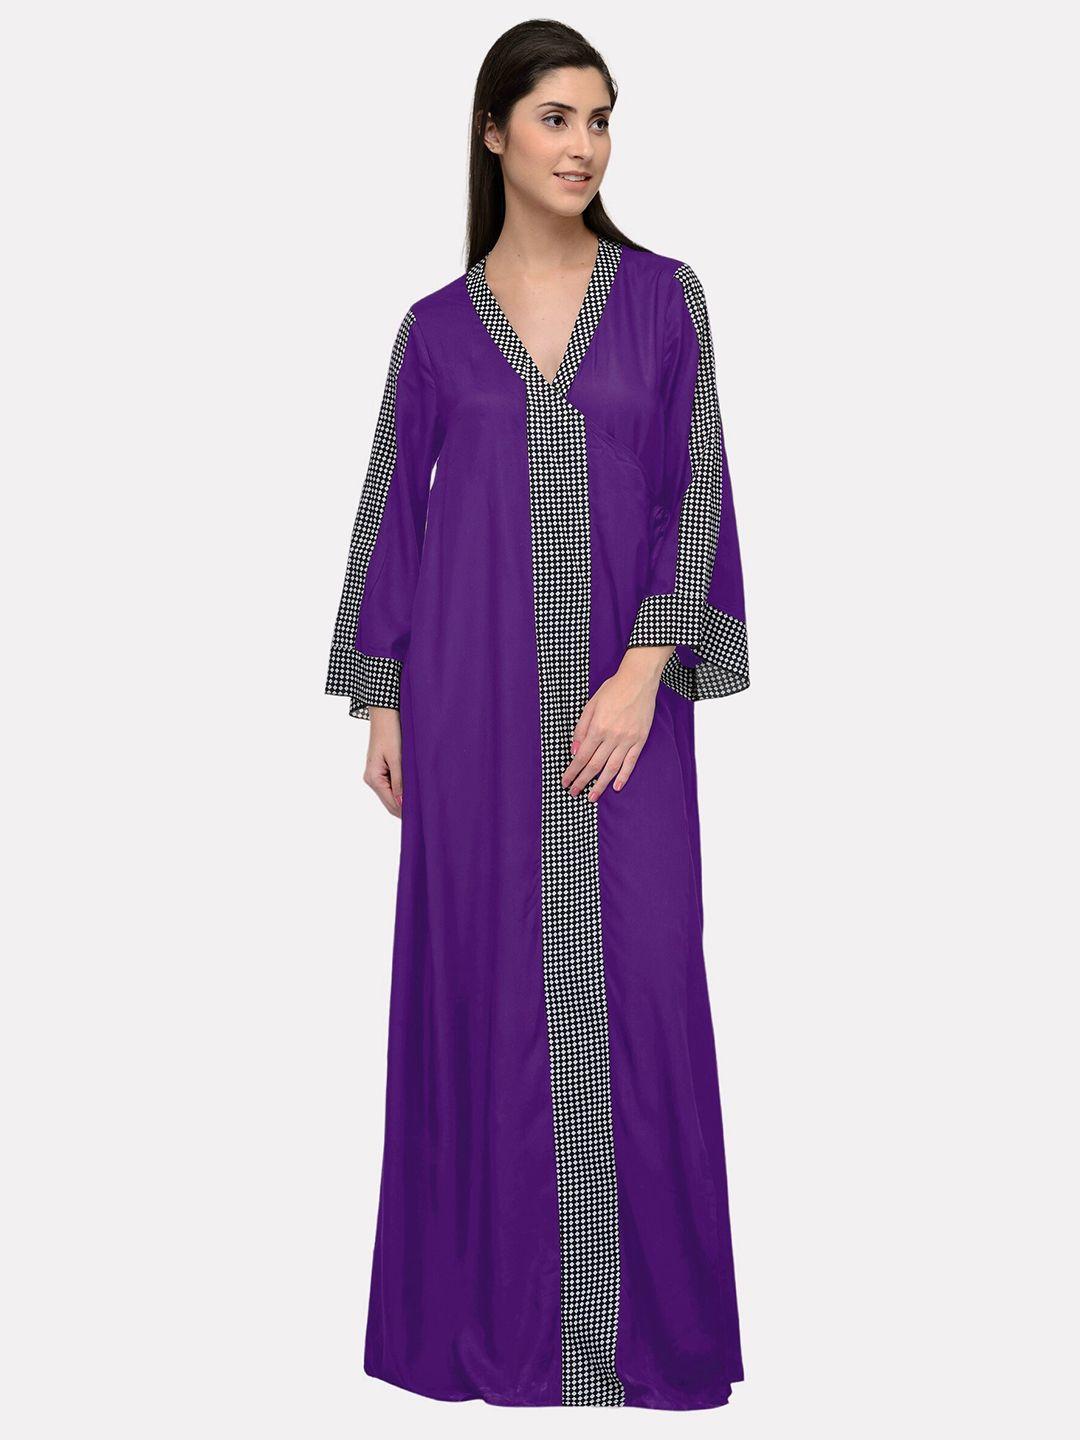 patrorna purple maxi nightdress